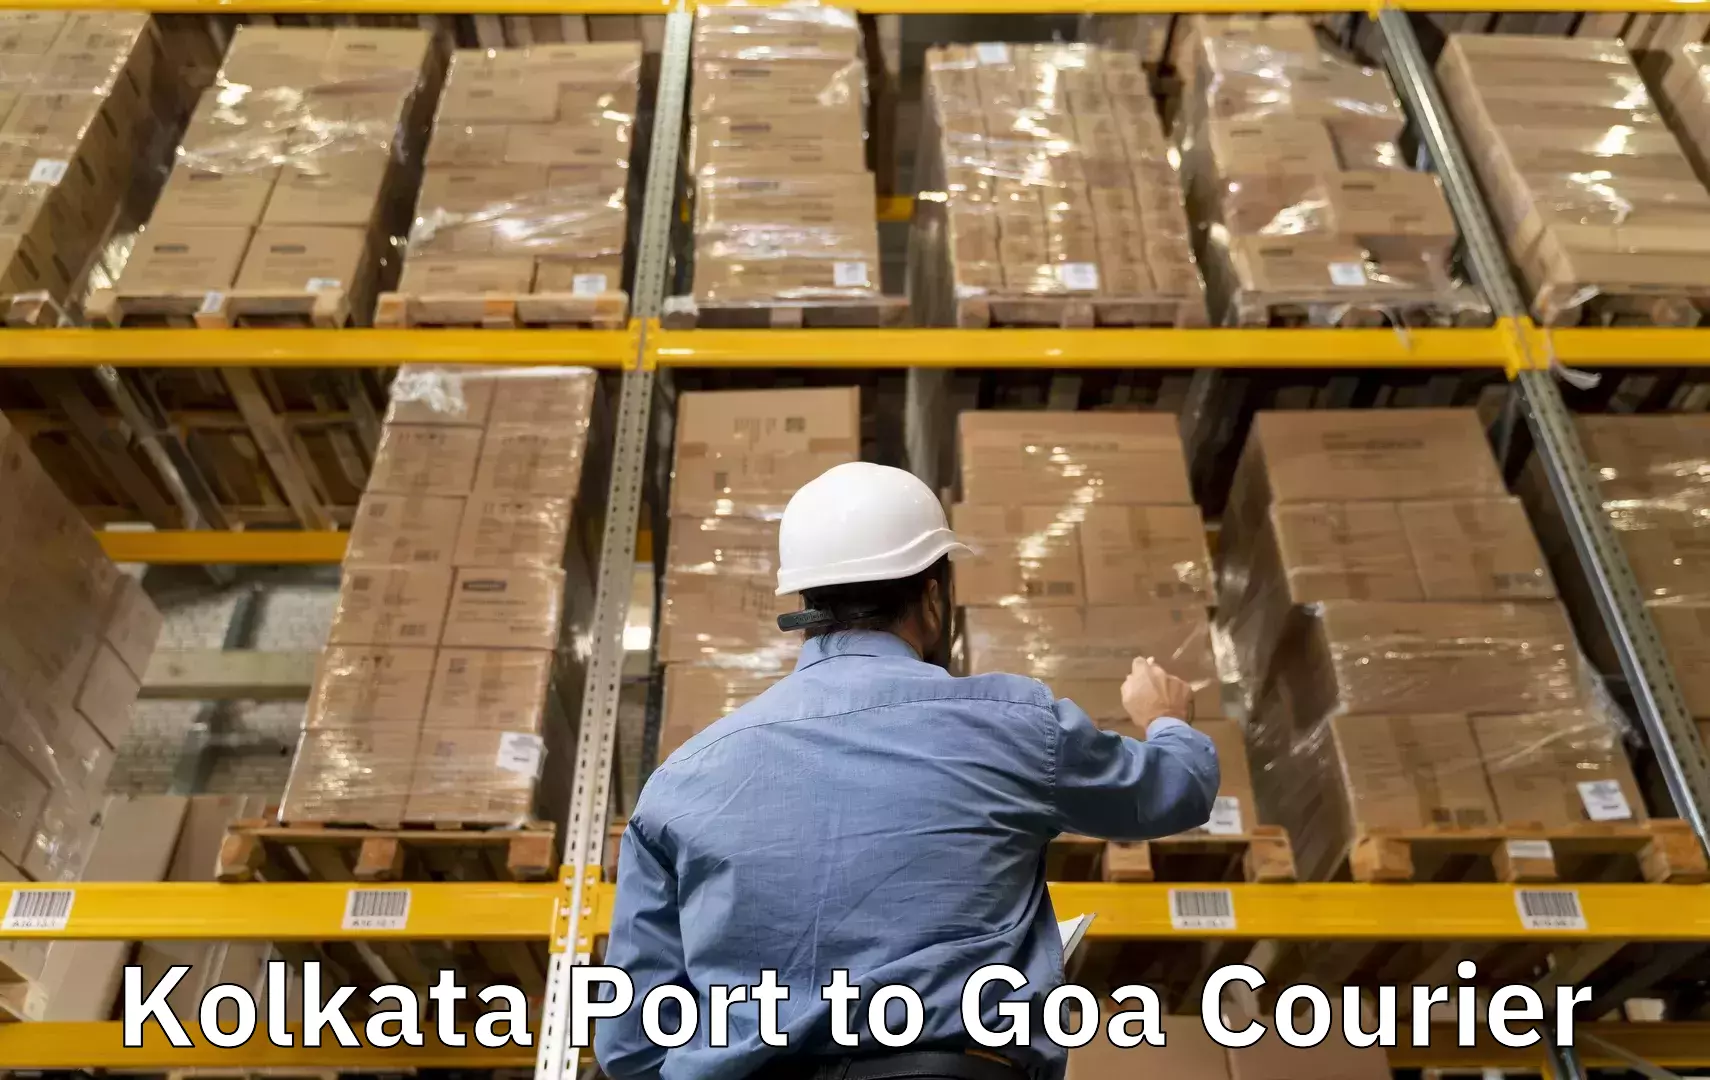 Luggage transit service Kolkata Port to Canacona